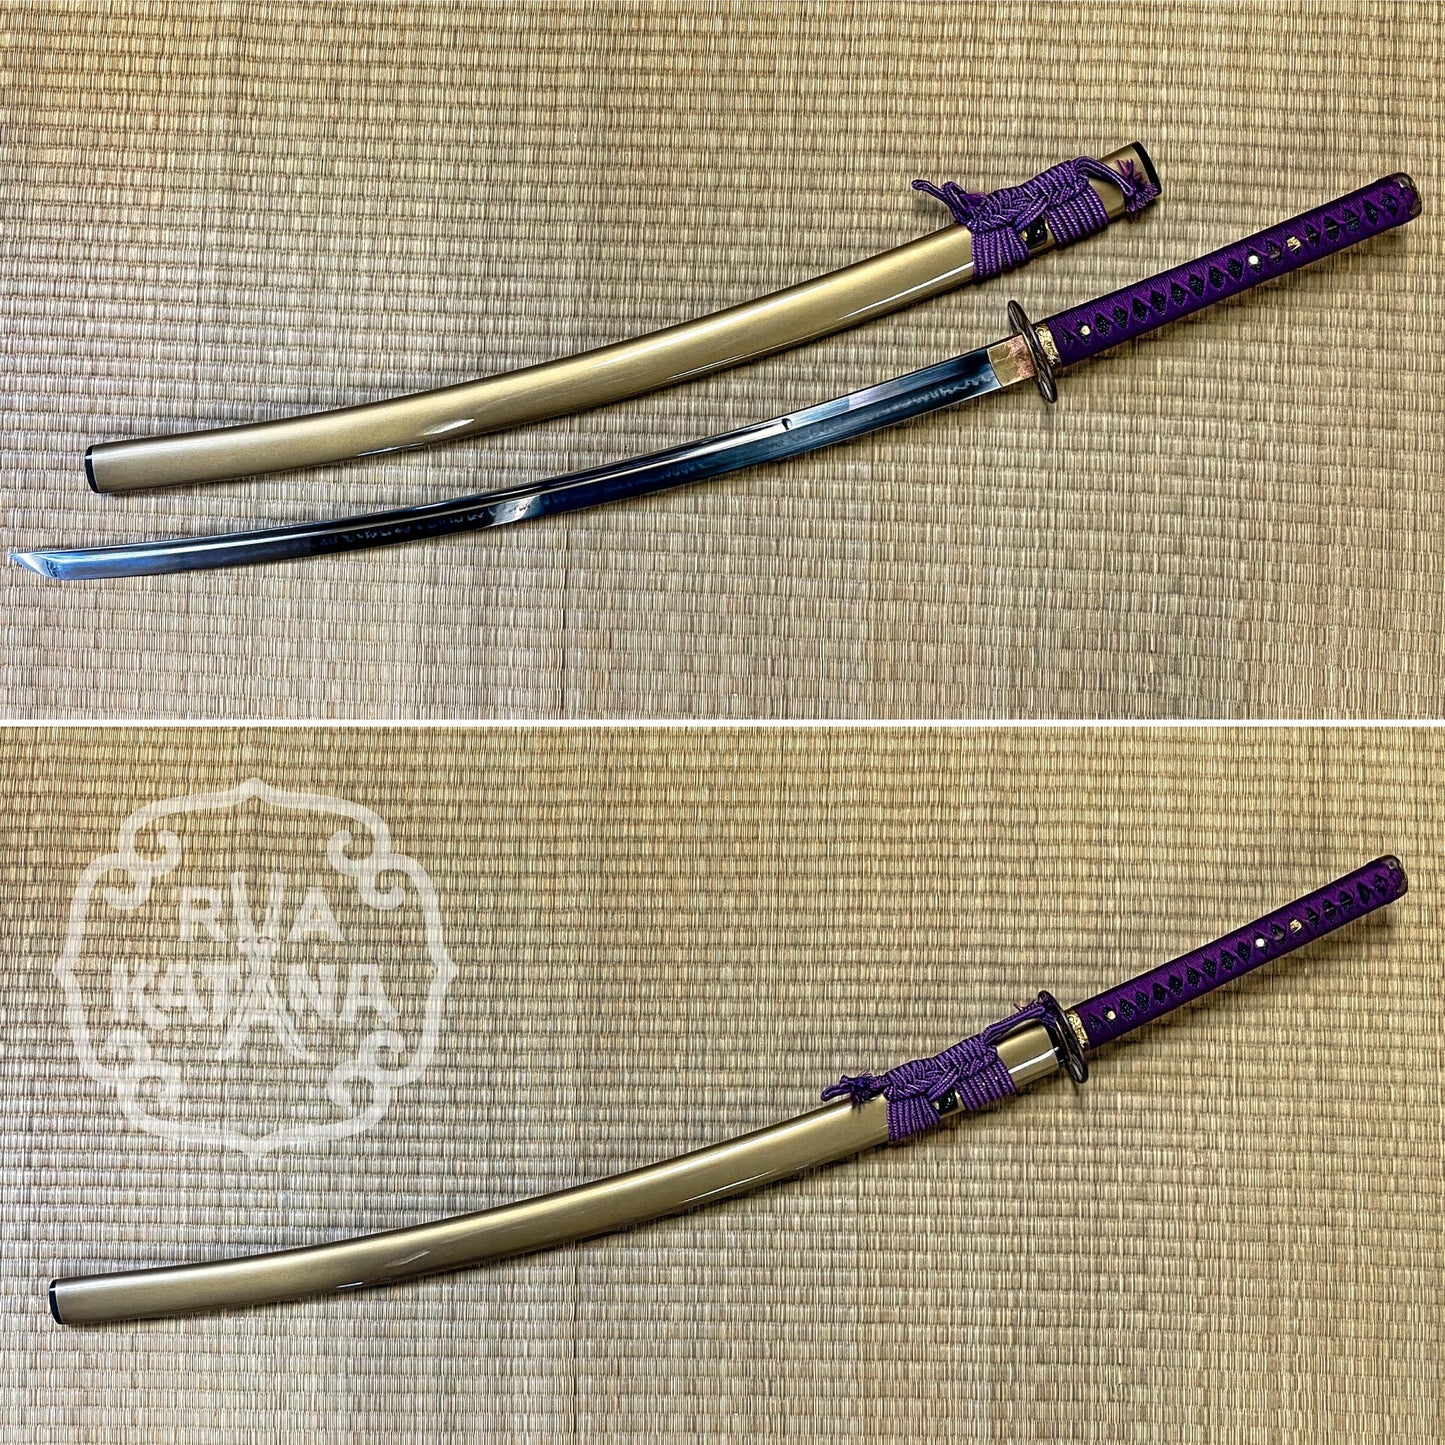 Legacy Blades Purple Arrow Dragon O-Katana - Choji Hamon, Koshi Sori 1095